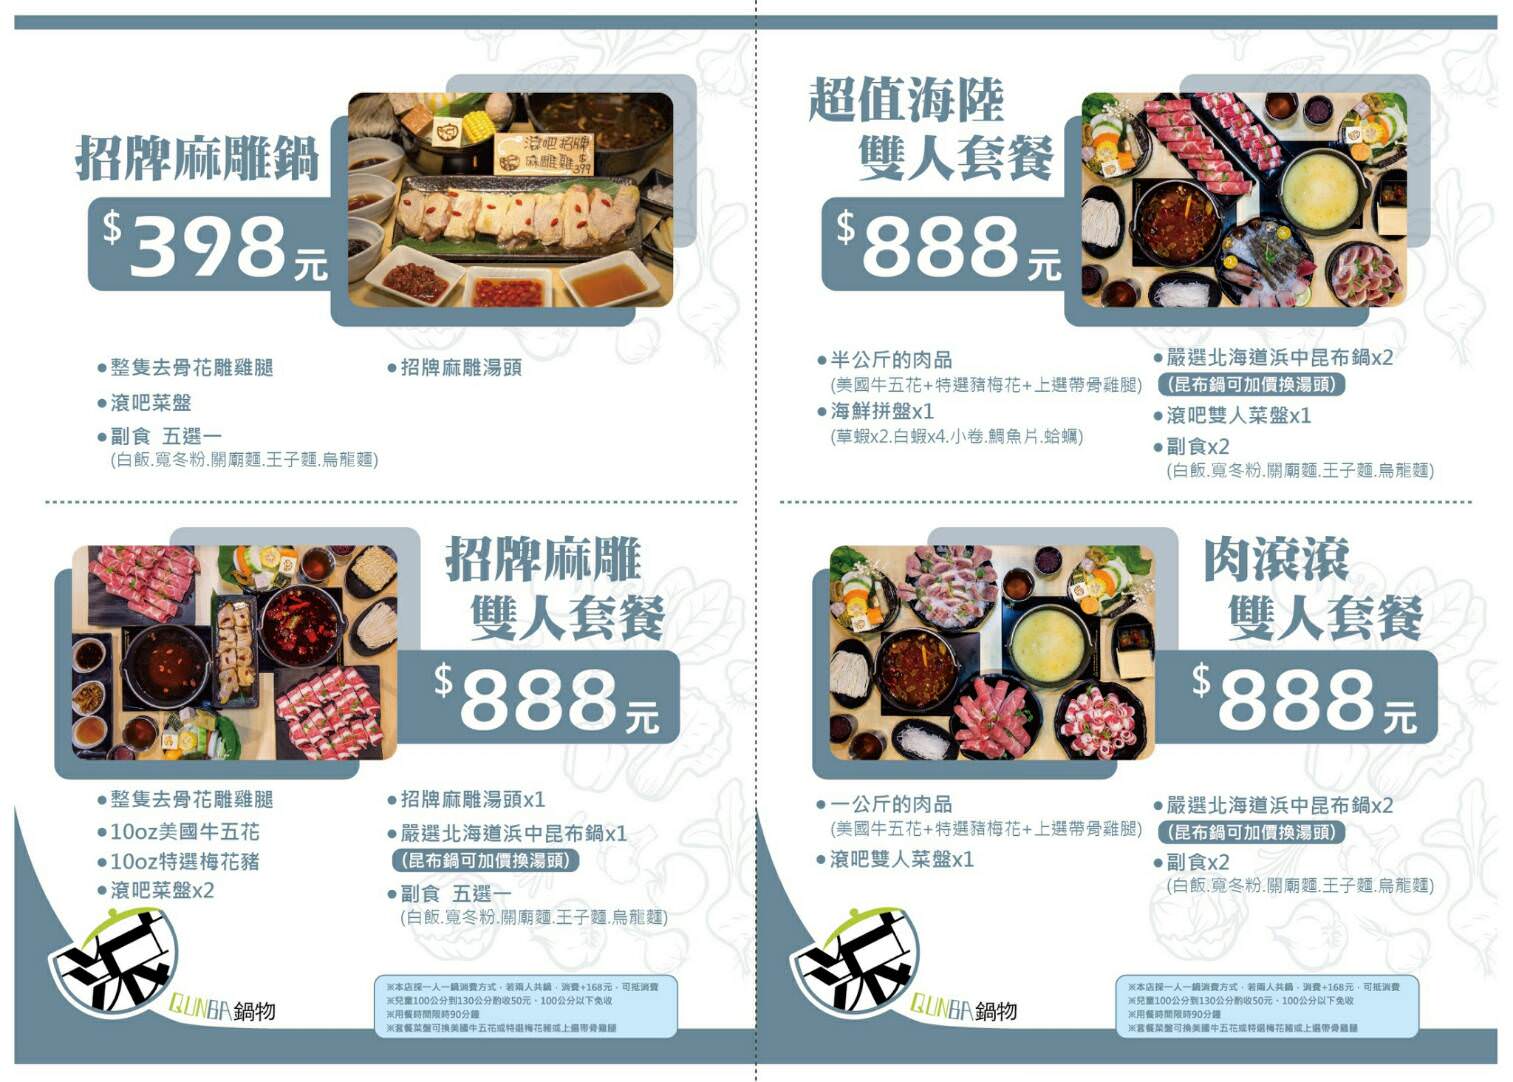 【台北食記】滾吧Qunba 鍋物 高cp值平價火鍋推薦！套餐248元起冰淇淋吃到飽